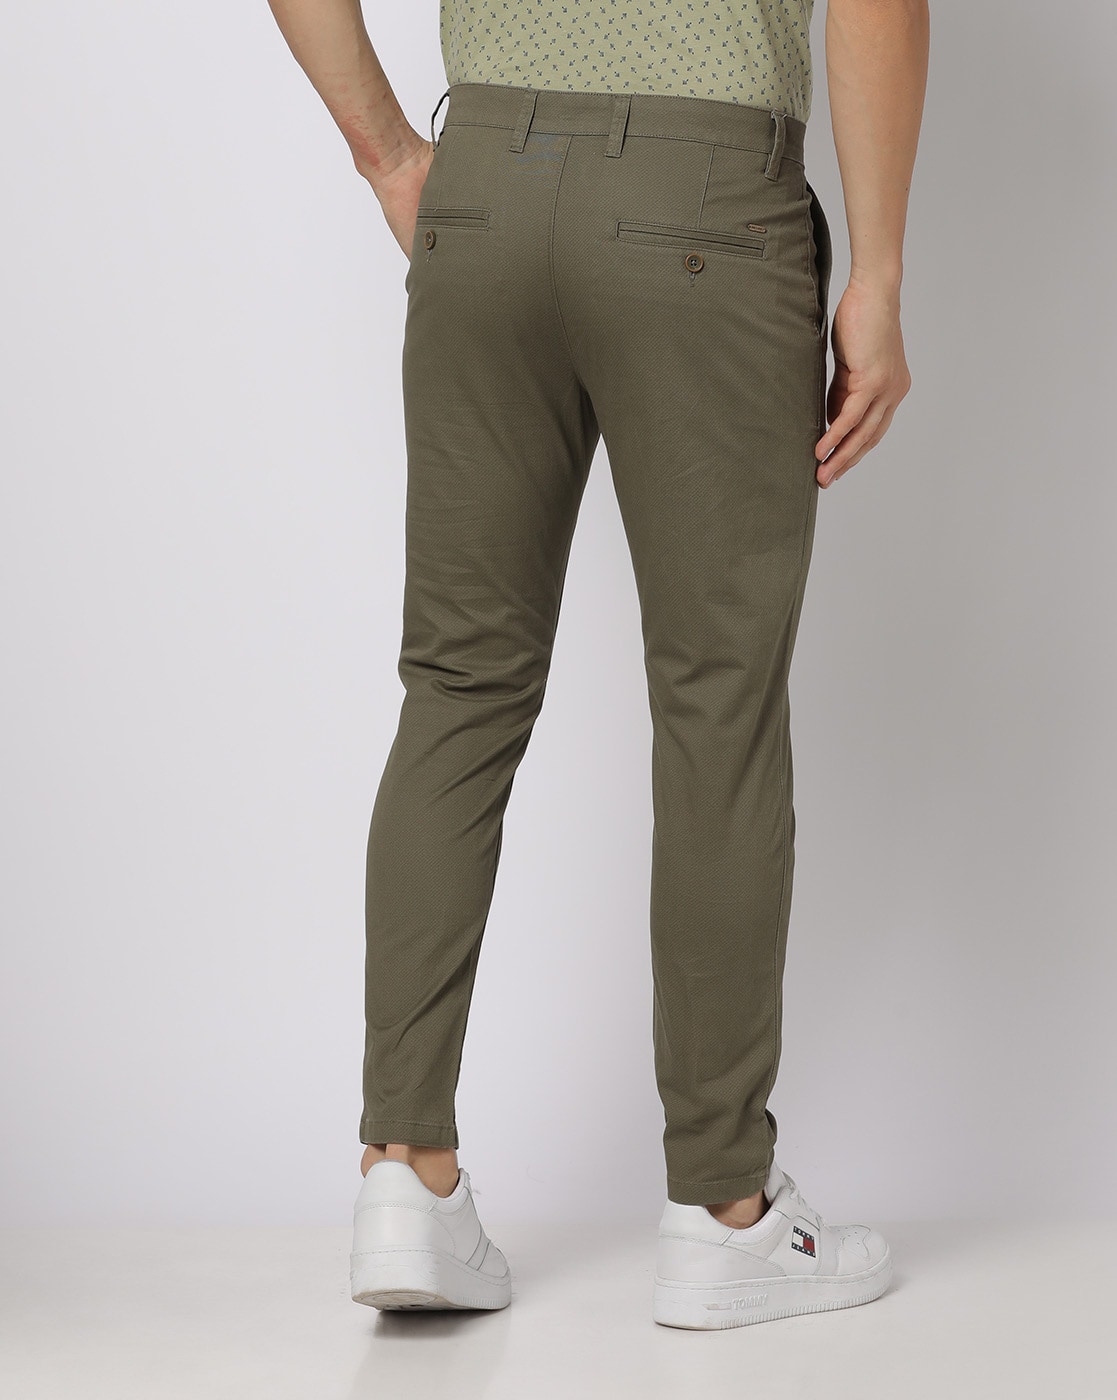 Slim fit men's trousers | PT Torino Online Shop